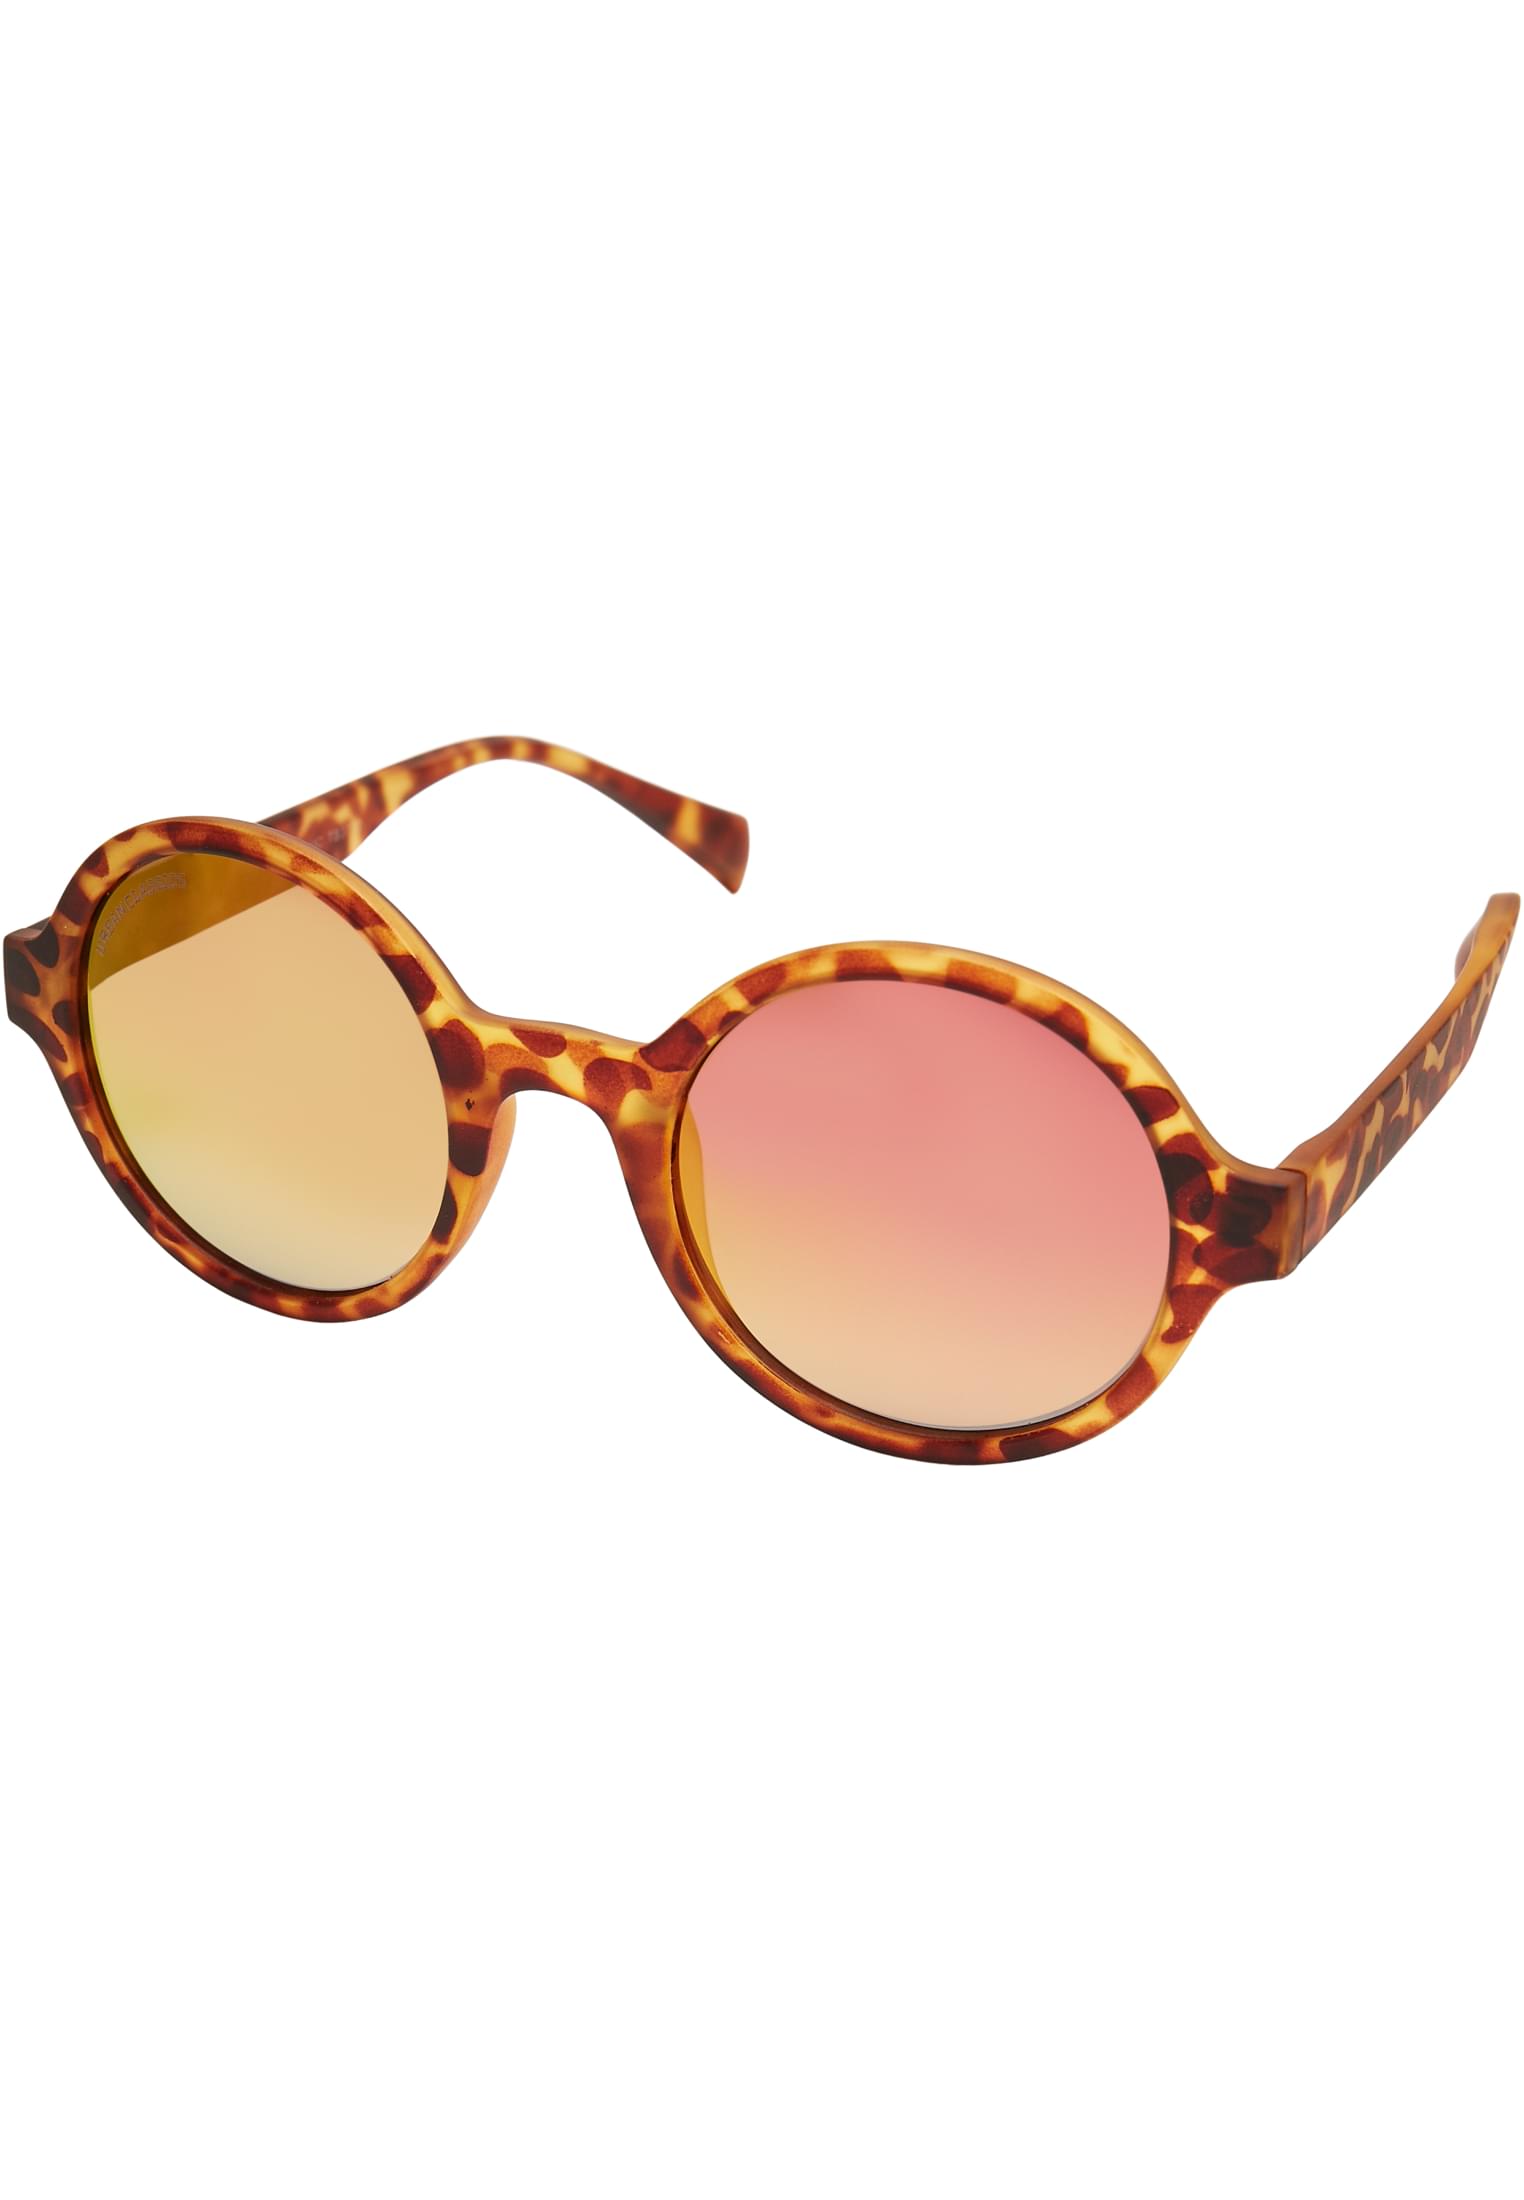 Accessoires Sunglasses Retro Funk UC in Farbe brown leo/ros?